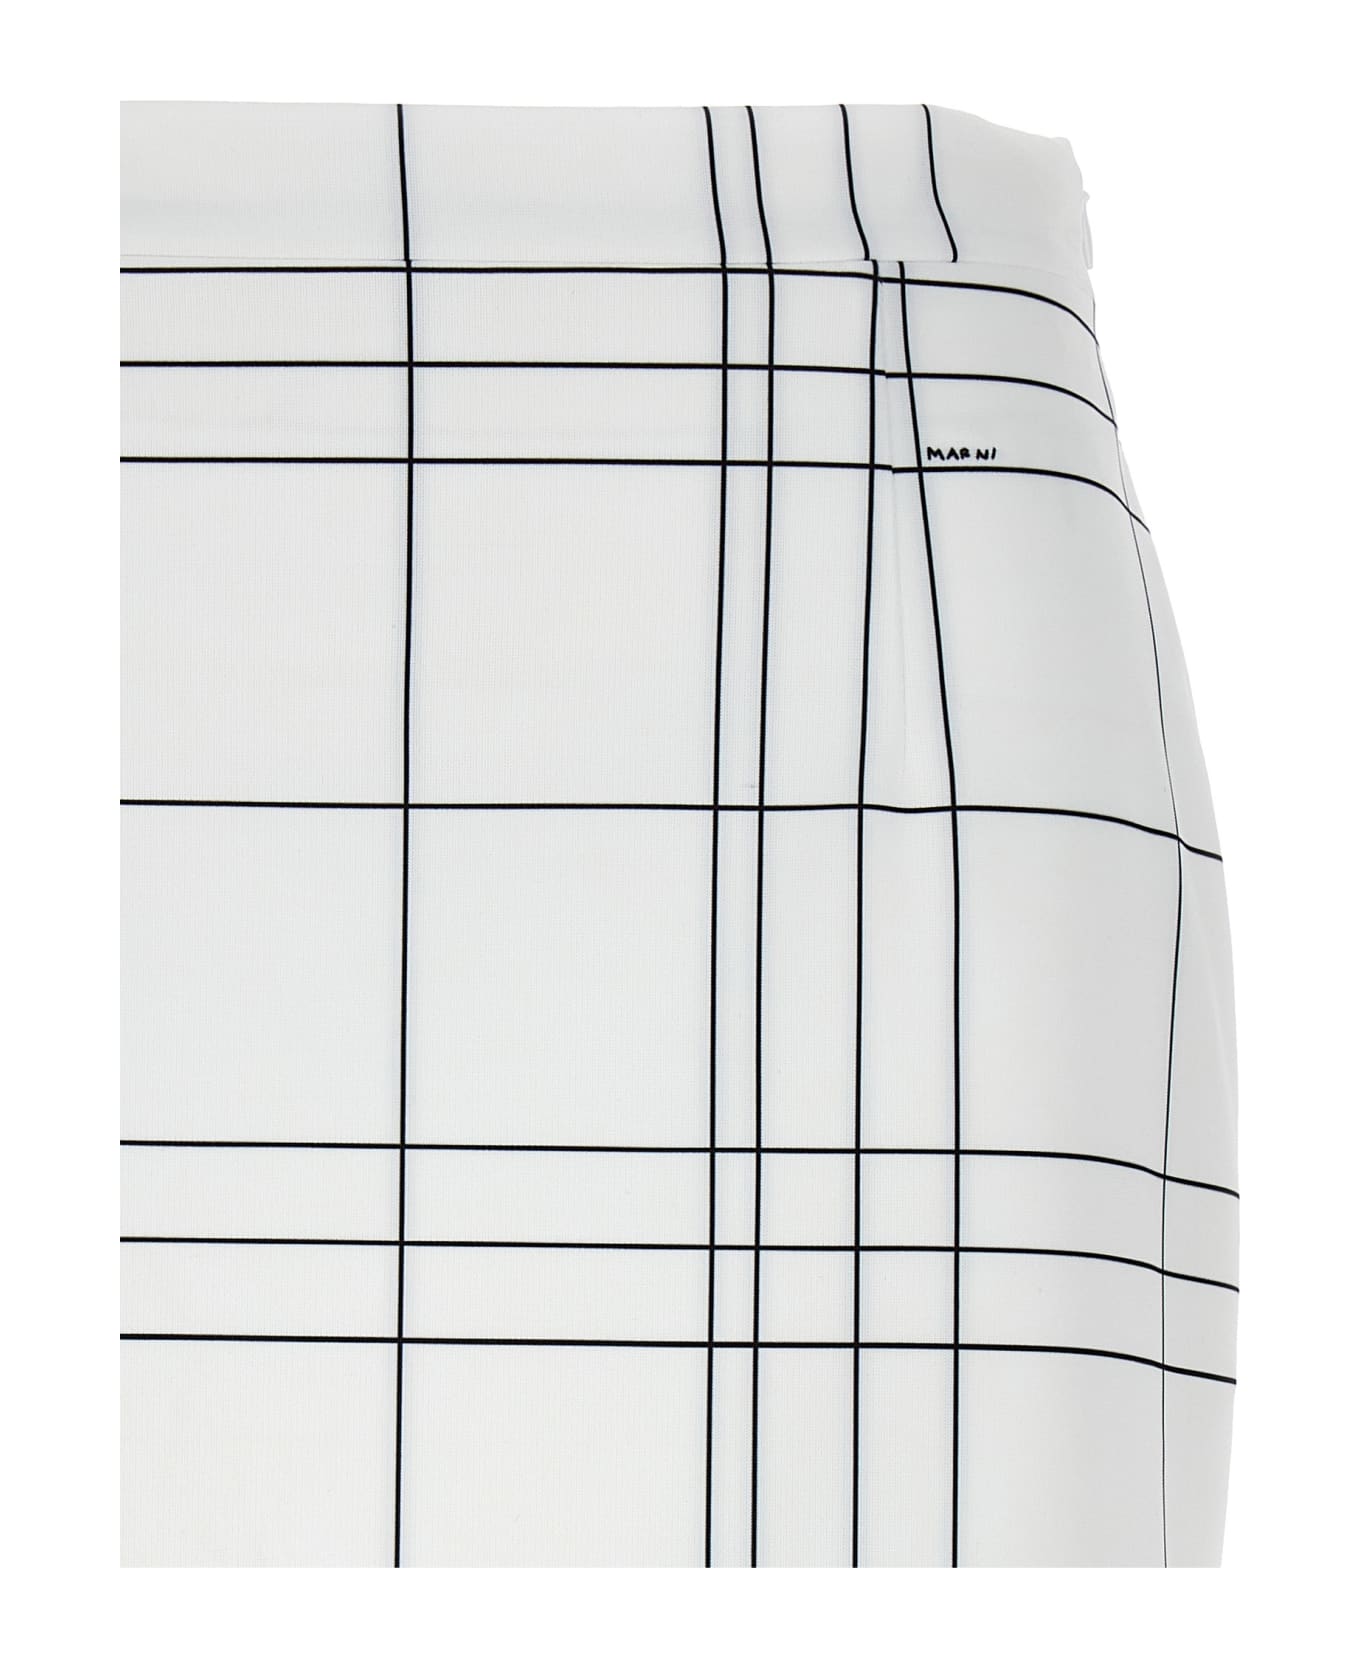 Marni Patterned Skirt - White/Black スカート